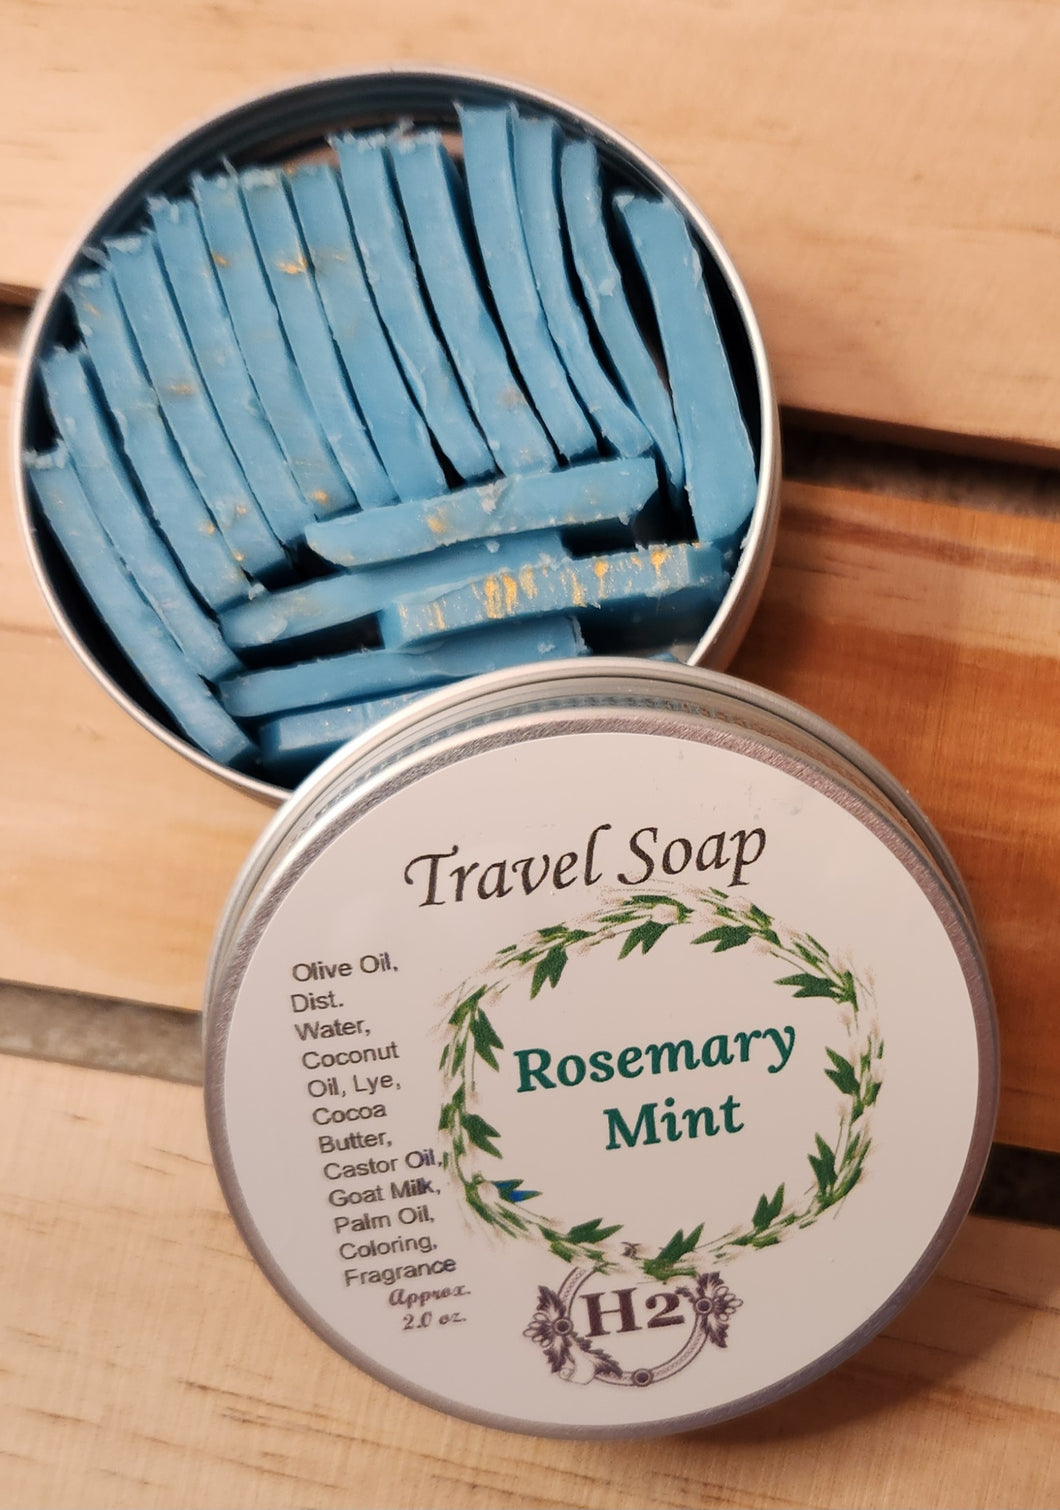 Travel Soap Rosemary Mint